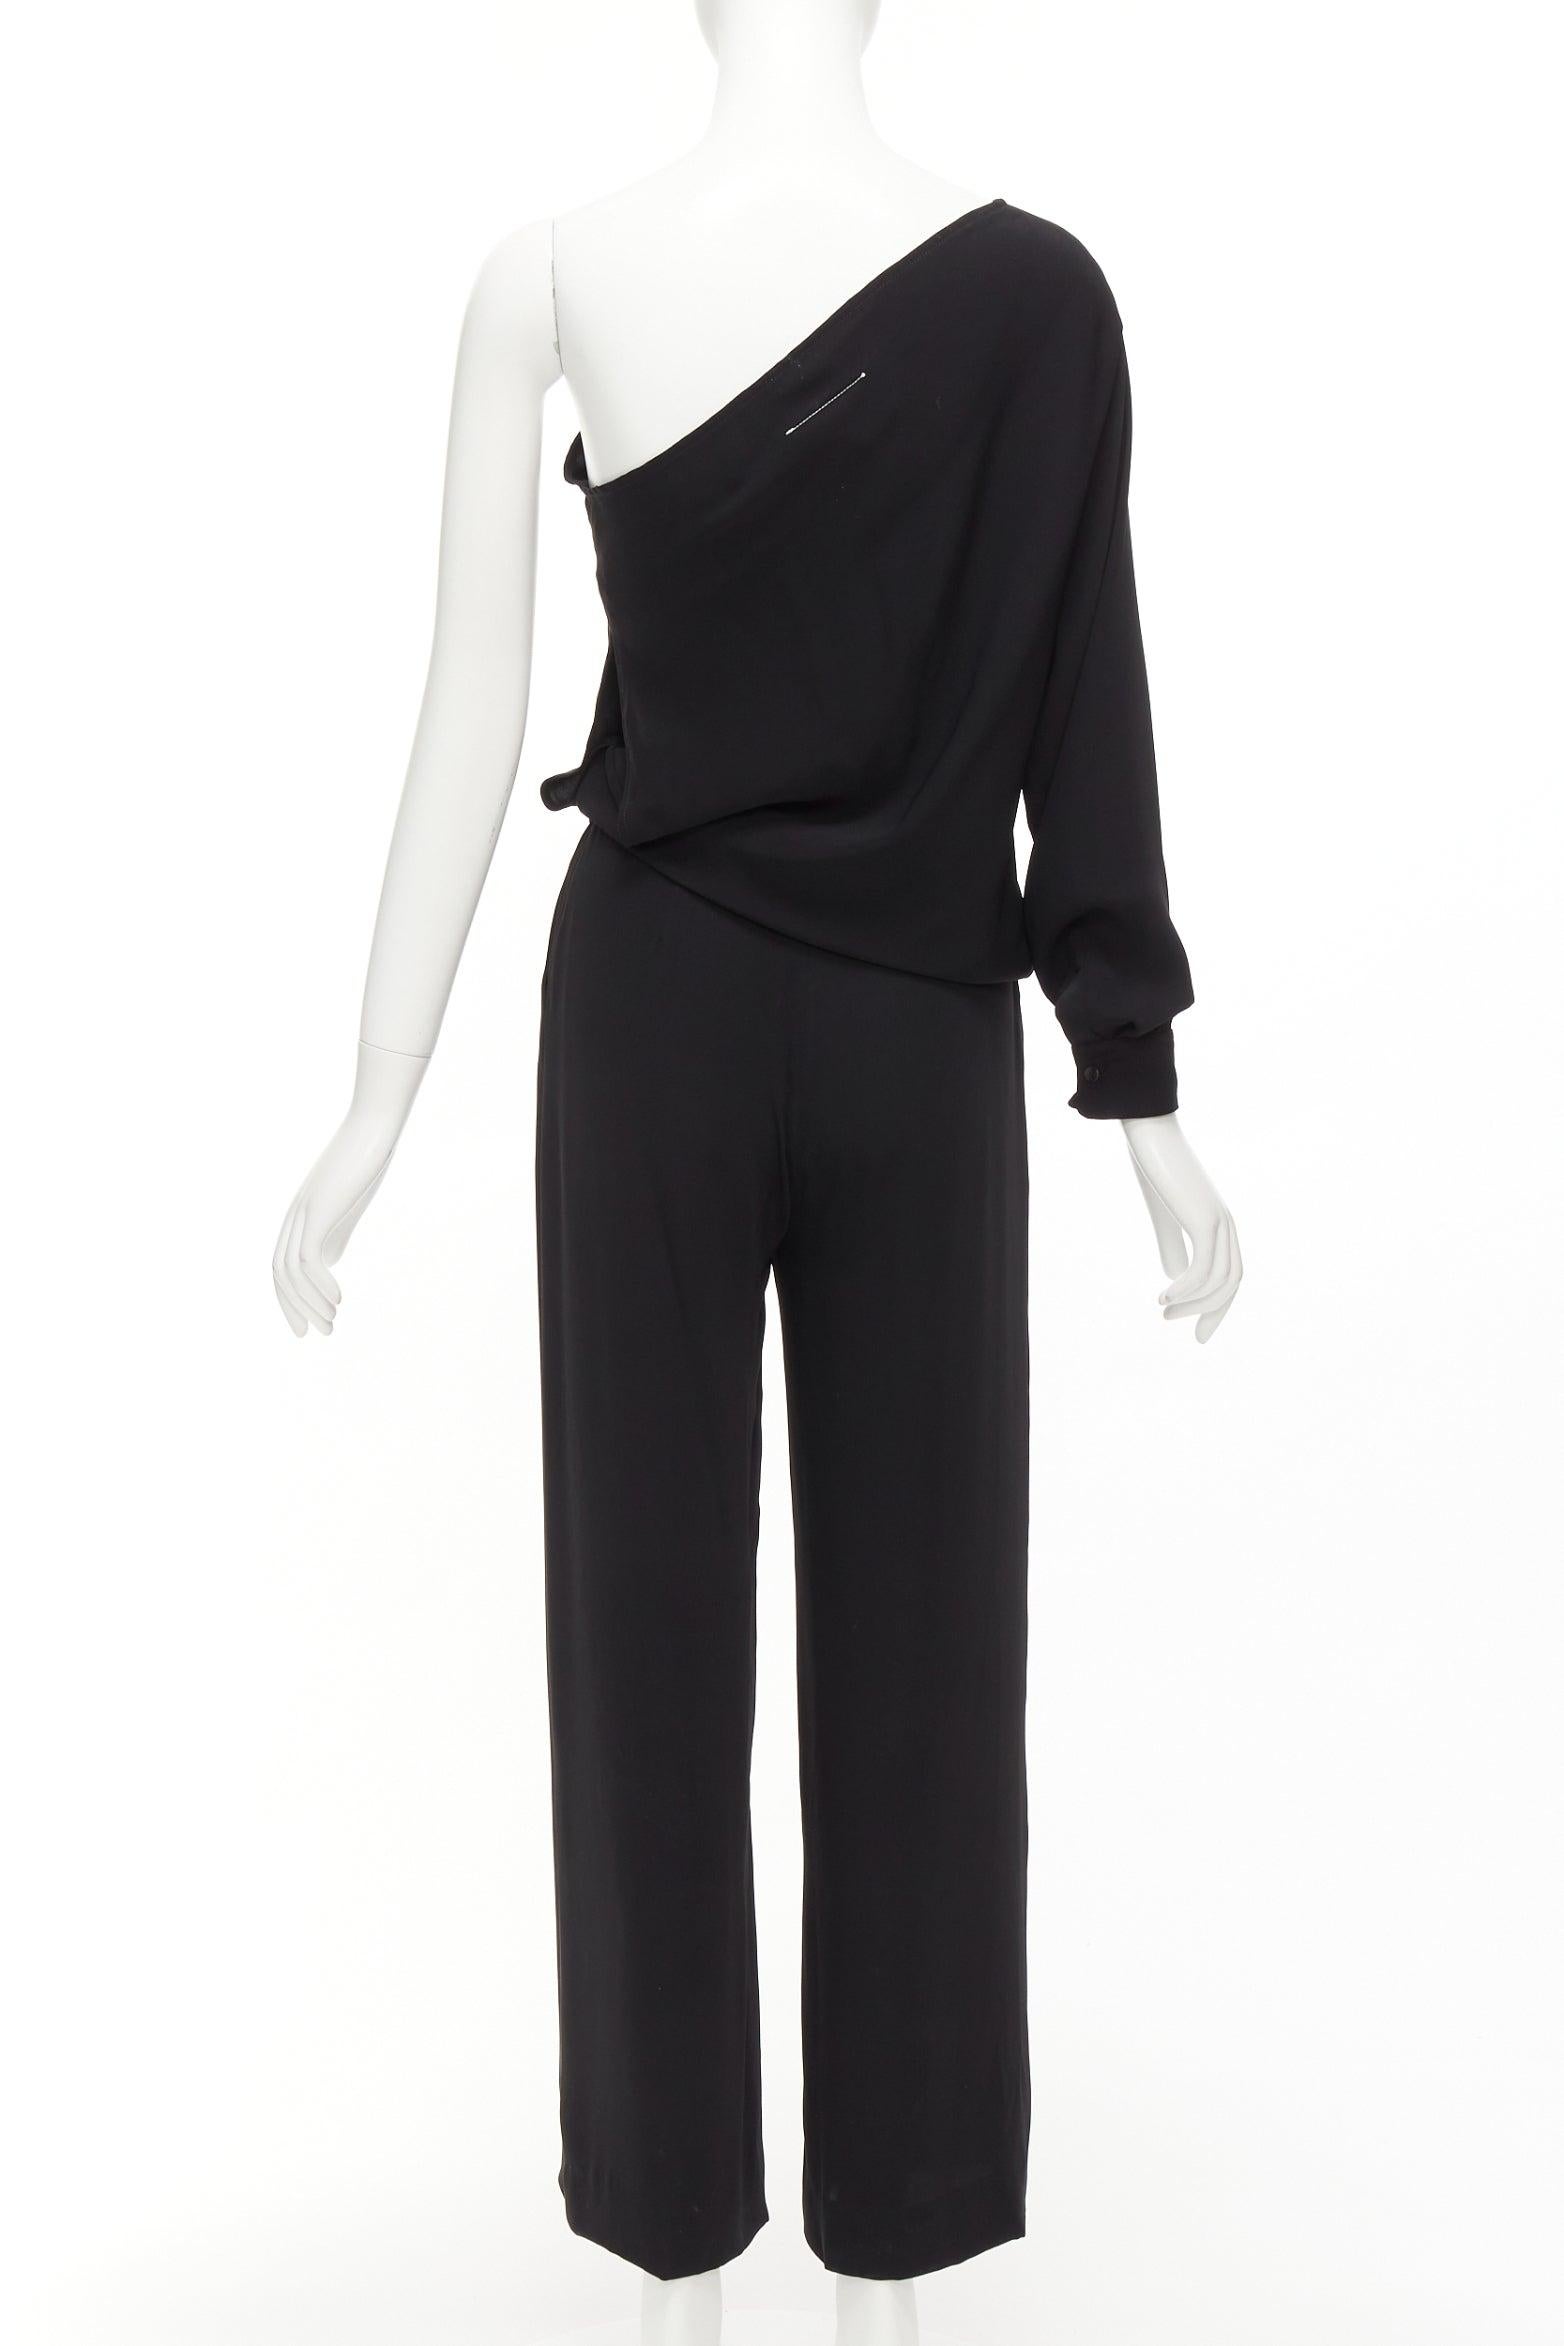 MAISON MARGIELA MM6 black one shoulder drape cut cropped jumpsuit FR36 S For Sale 1